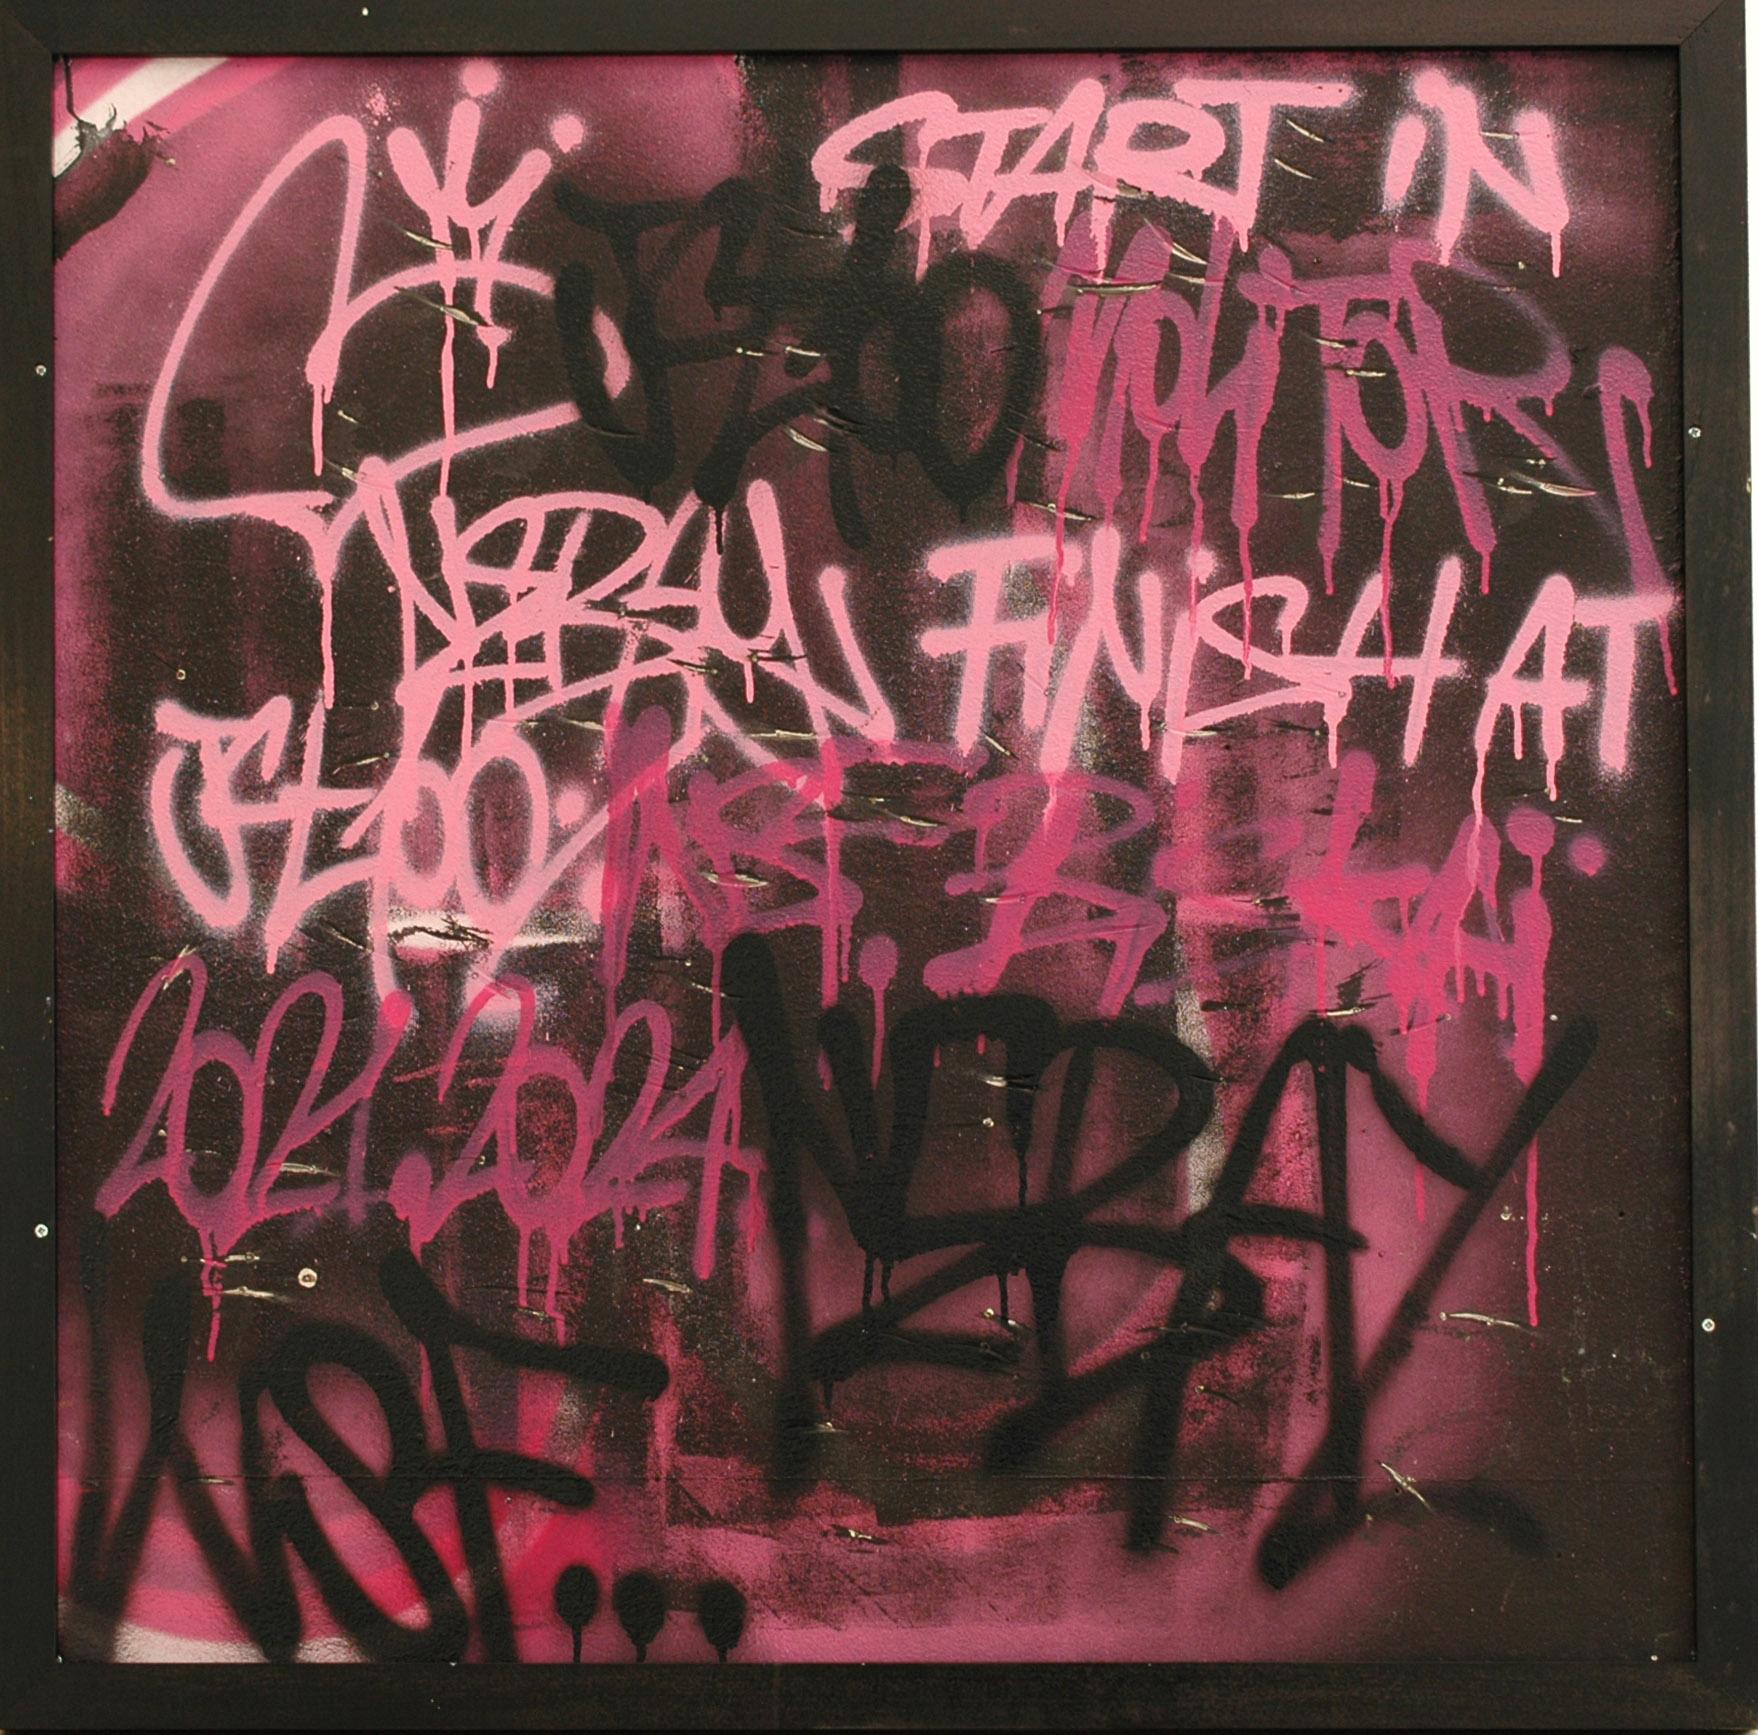 Spray und Acryl auf Leinwand
100 x 100 cm (39,4 x 39,4 Zoll)
Einzigartige Kunstwerke
schwarzer Karton (105 x 105 x 6 cm) - (41,3 x 41,3 x 2,4 in)
Signiert von der Künstlerin
Echtheitszertifikat